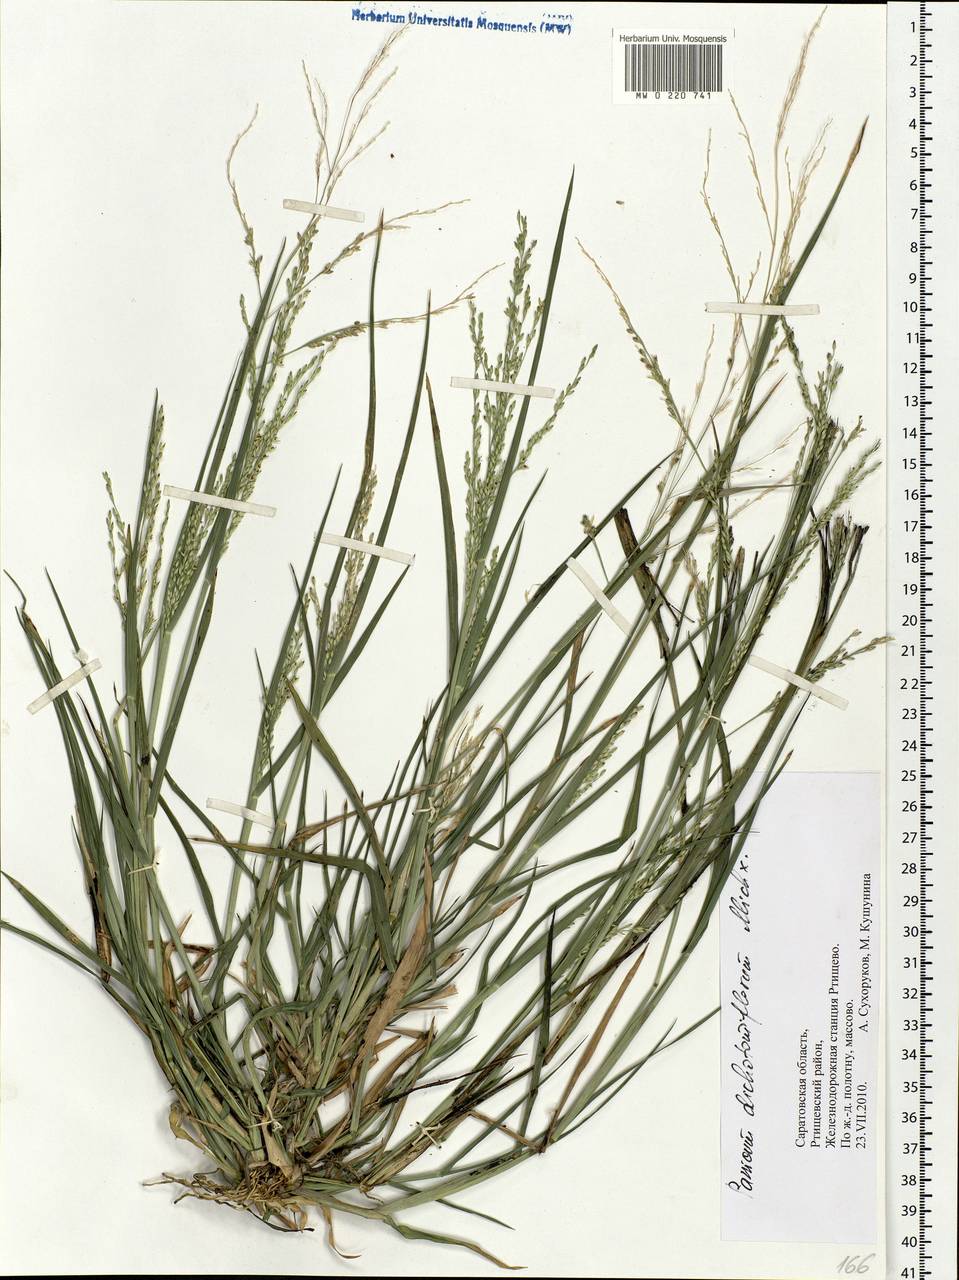 Panicum dichotomiflorum Michx., Eastern Europe, Lower Volga region (E9) (Russia)